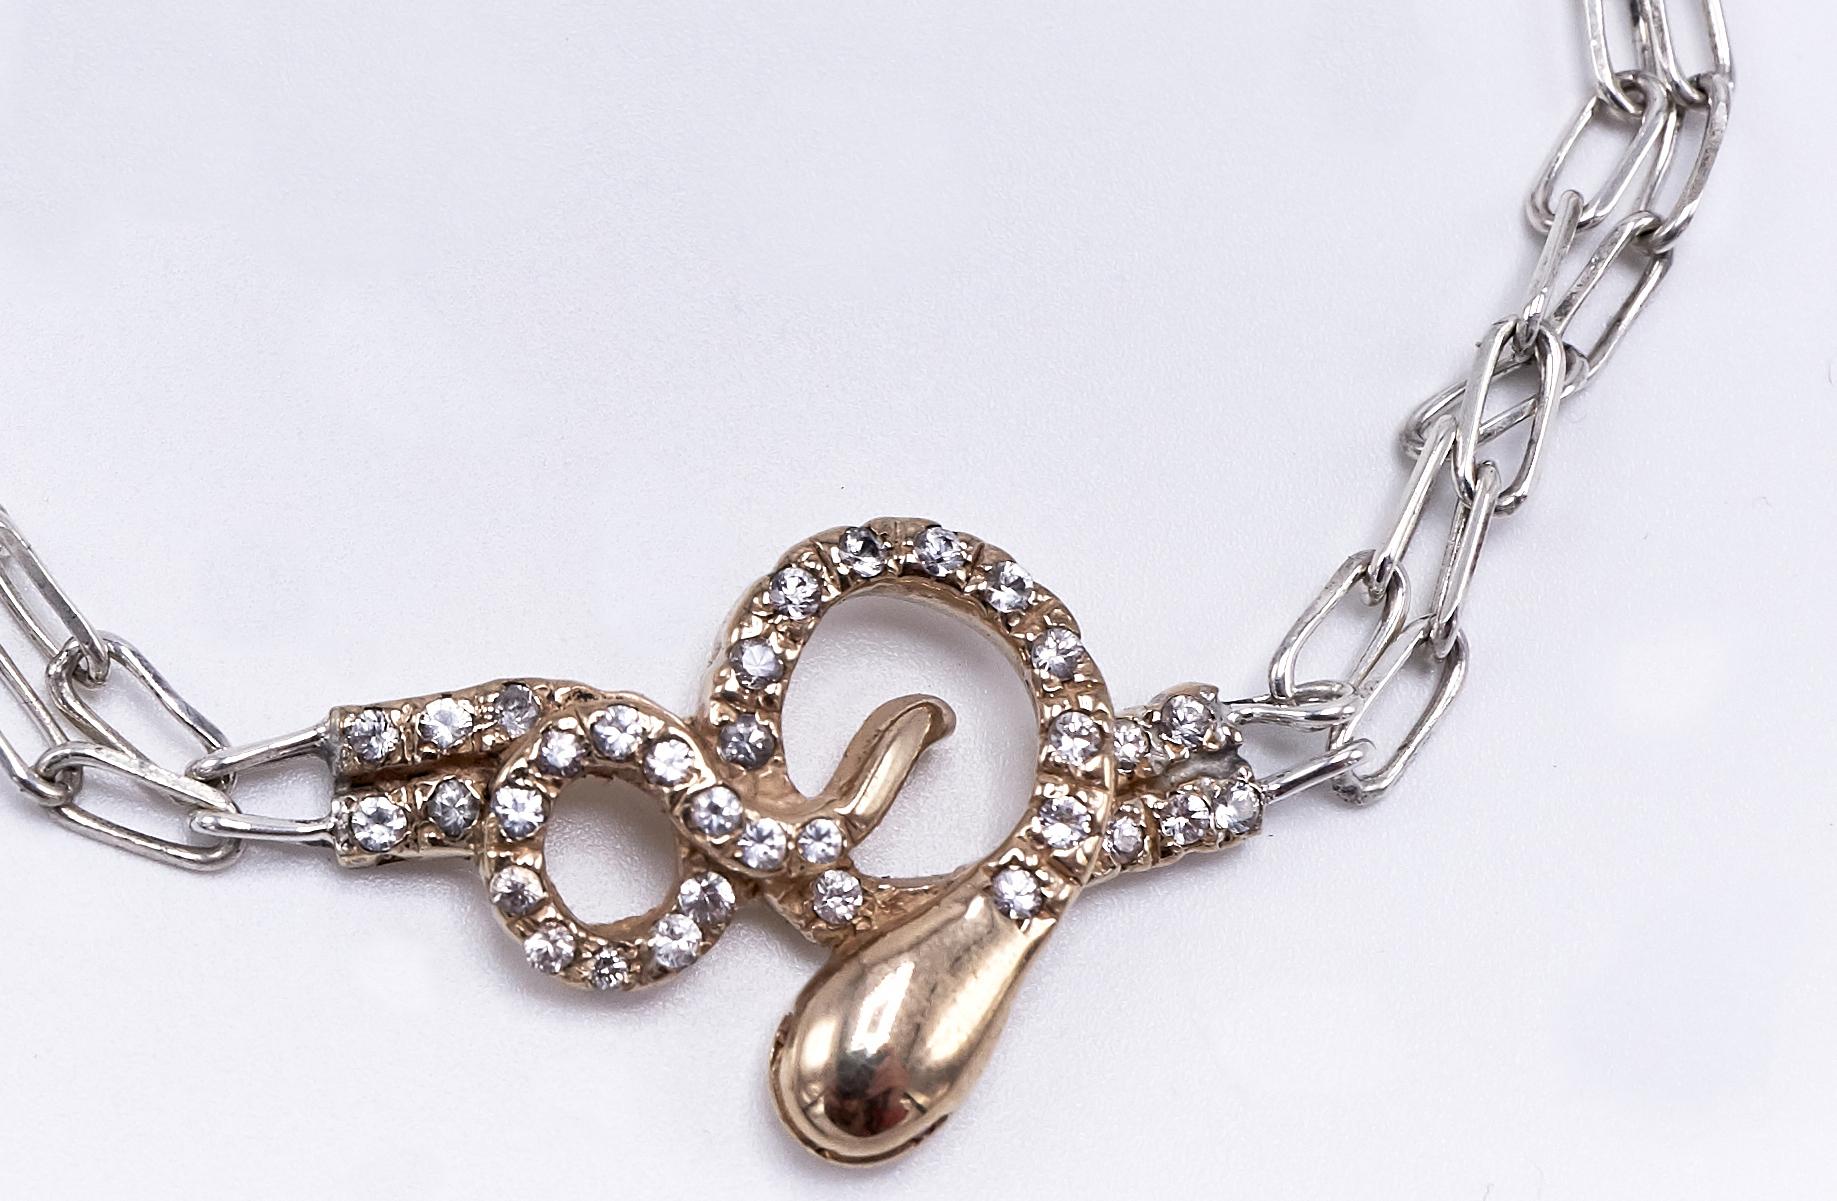 Weißer Diamant Rubin Schlange Halskette Kette Gold Anhänger Choker J Dauphin

J DAUPHIN 